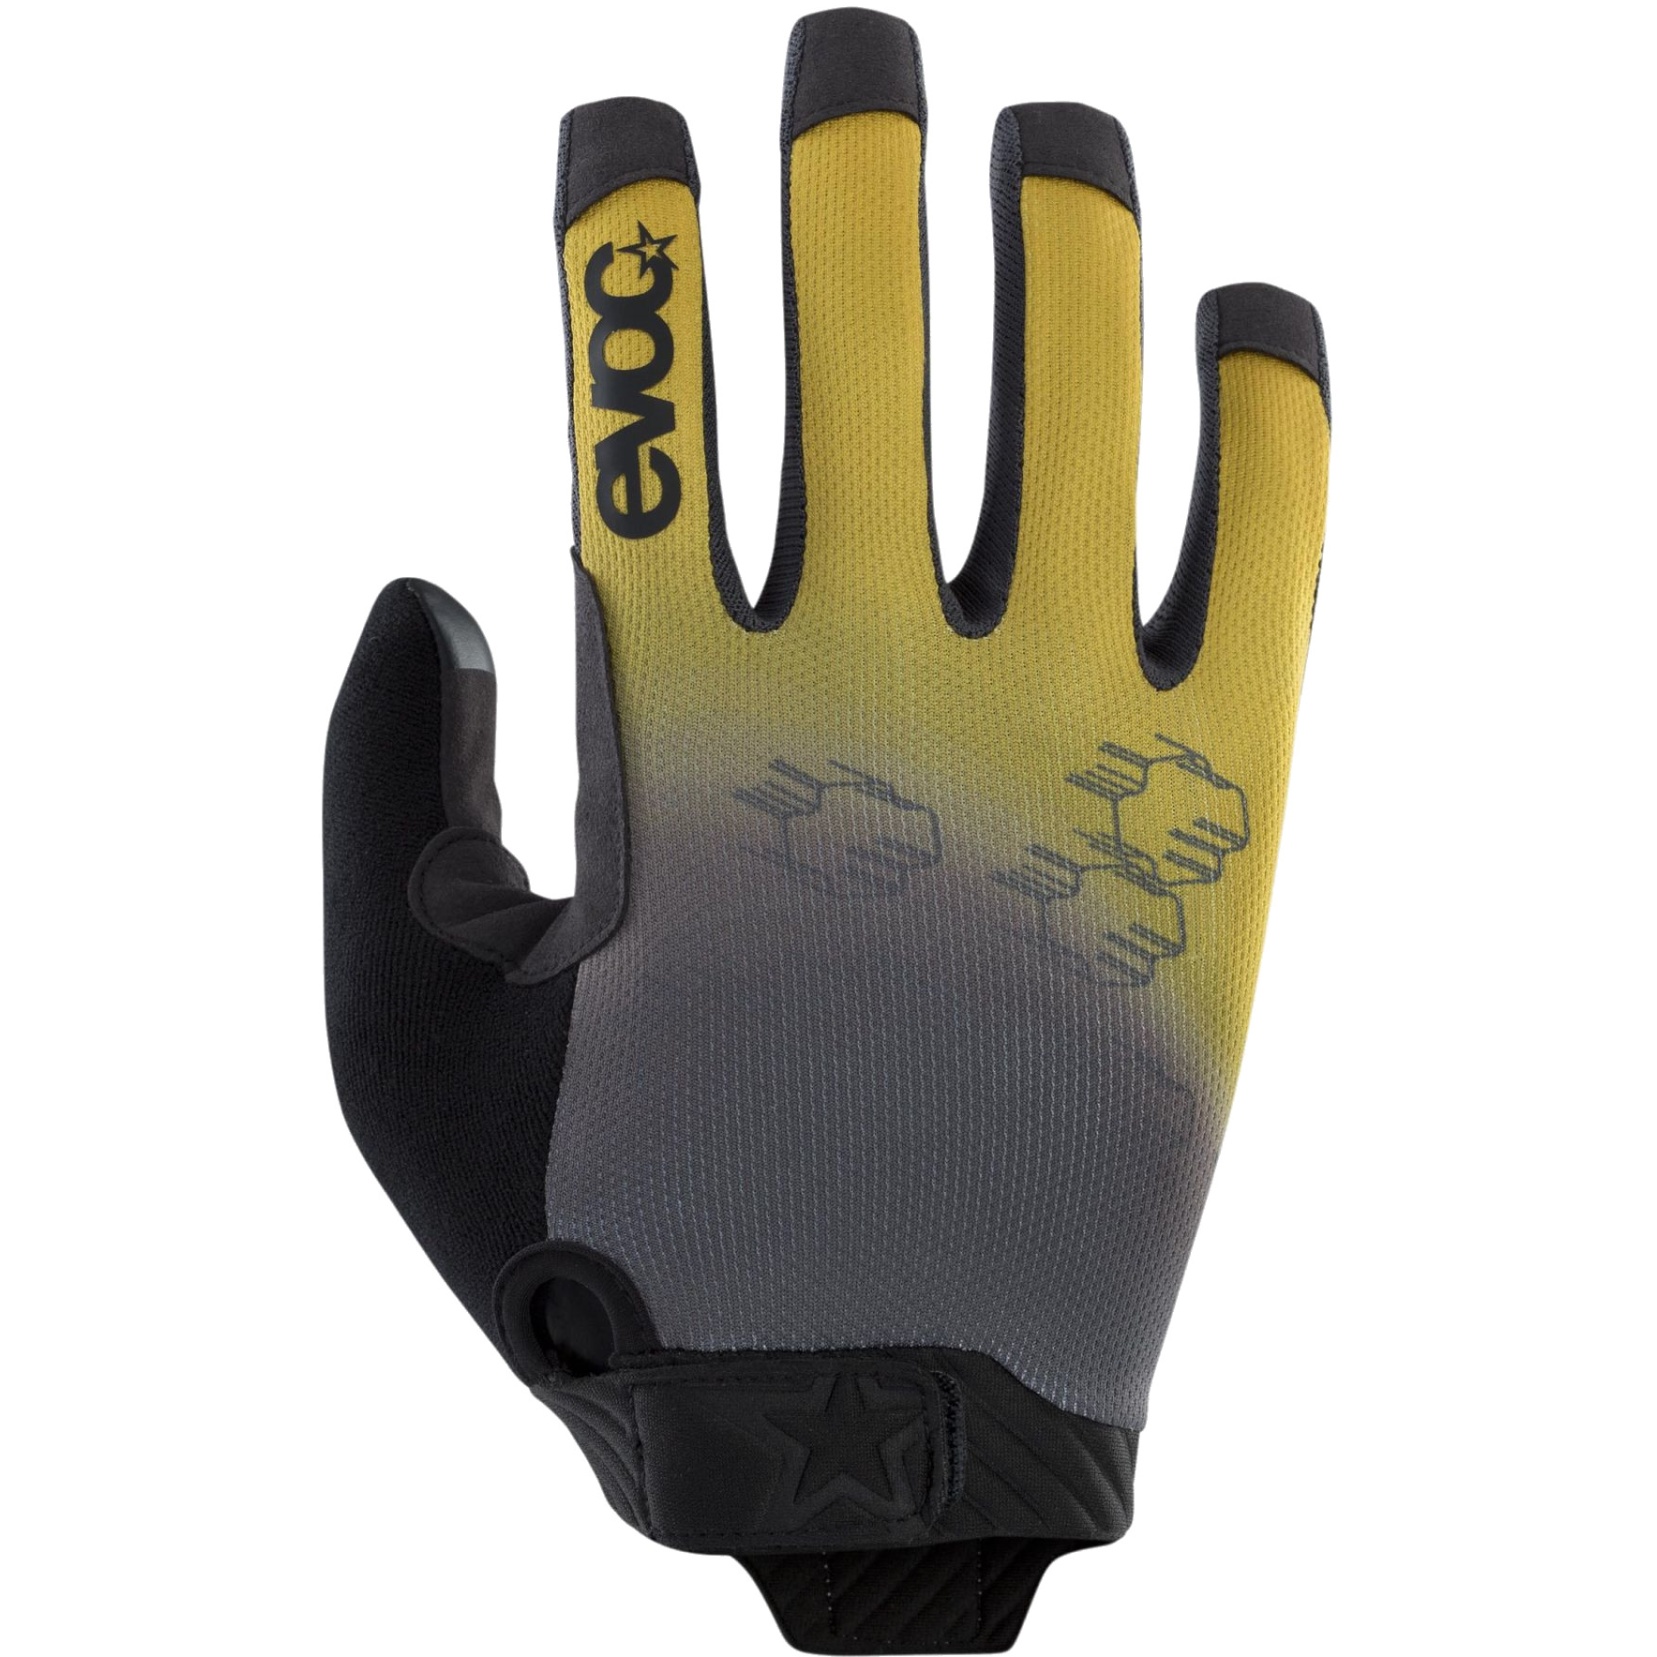 Produktbild von EVOC Enduro Touch Handschuhe - Curry